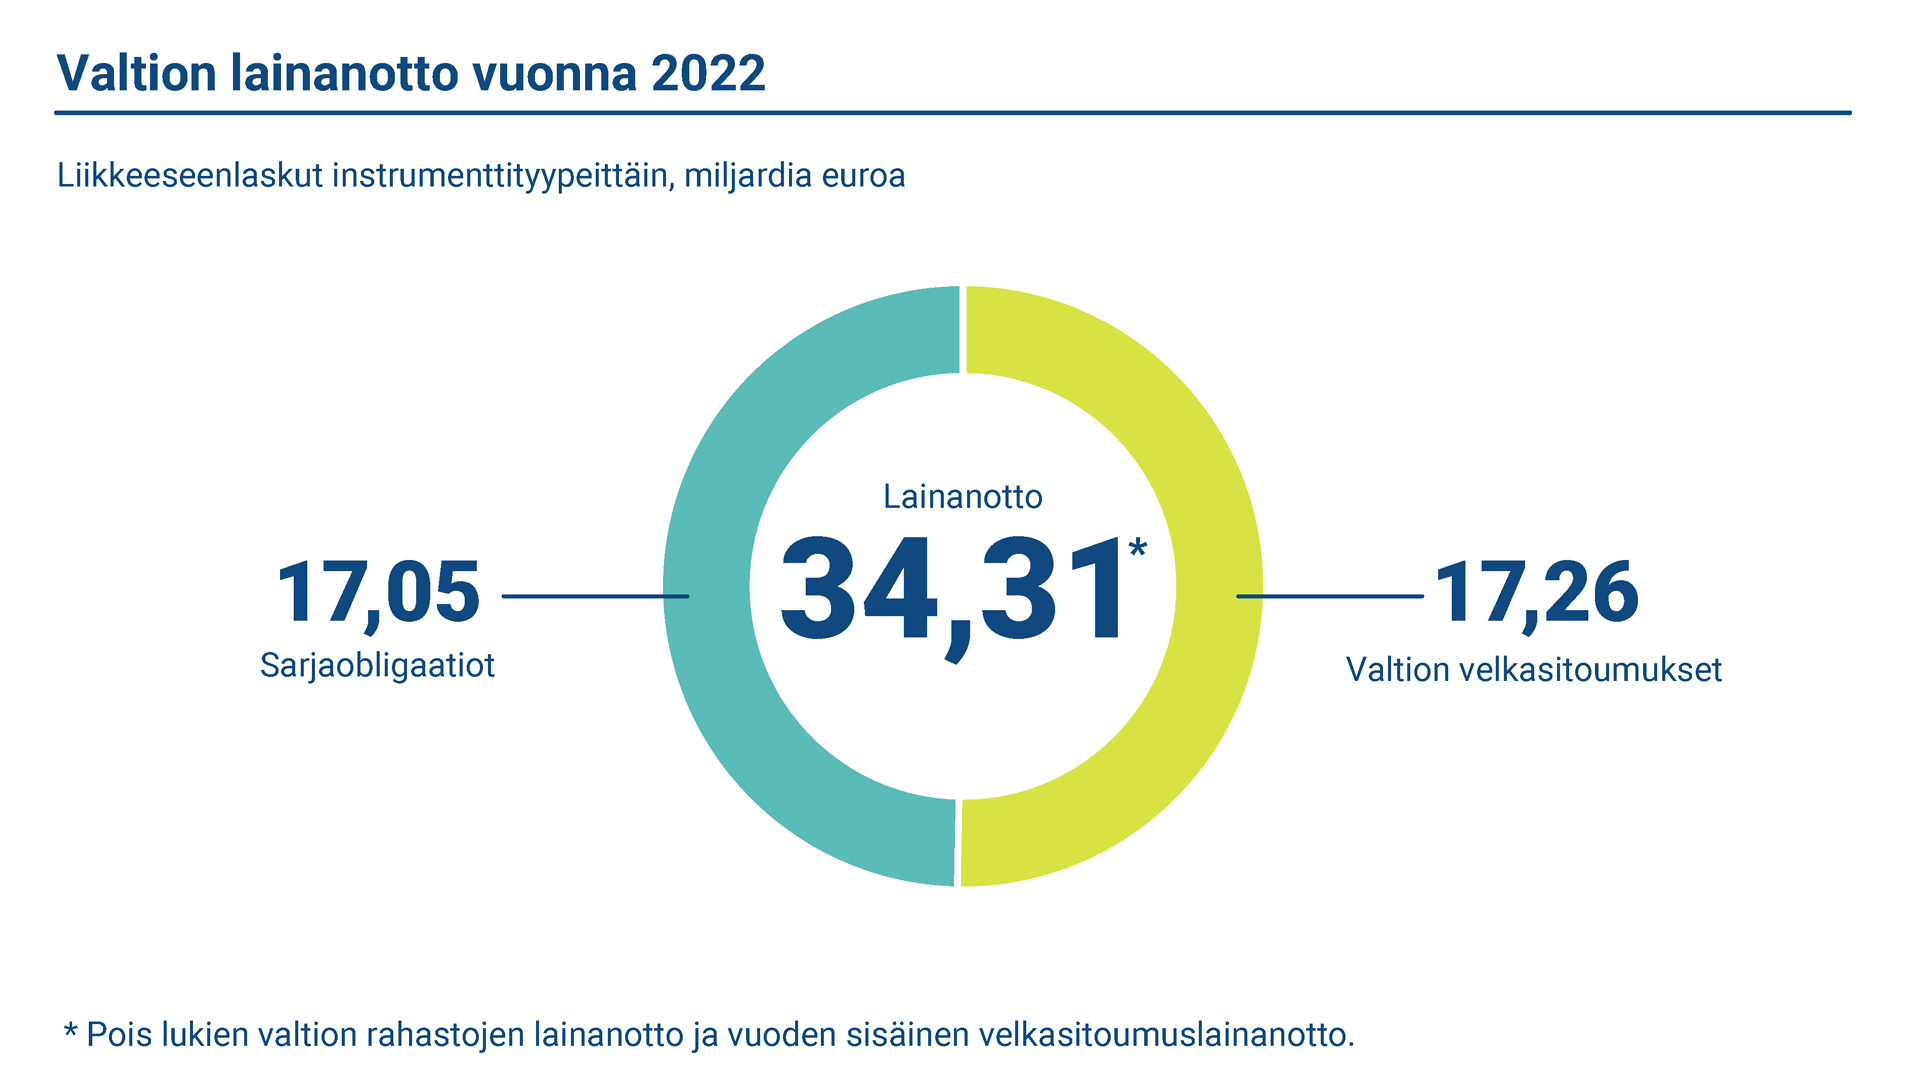 Toteutunut bruttolainanotto vuonna 2022 oli 34,31 miljardia euroa, josta 17,05 miljardia euroa oli pitkäaikaista ja 17,26 miljardia euroa lyhytaikaista lainanottoa.